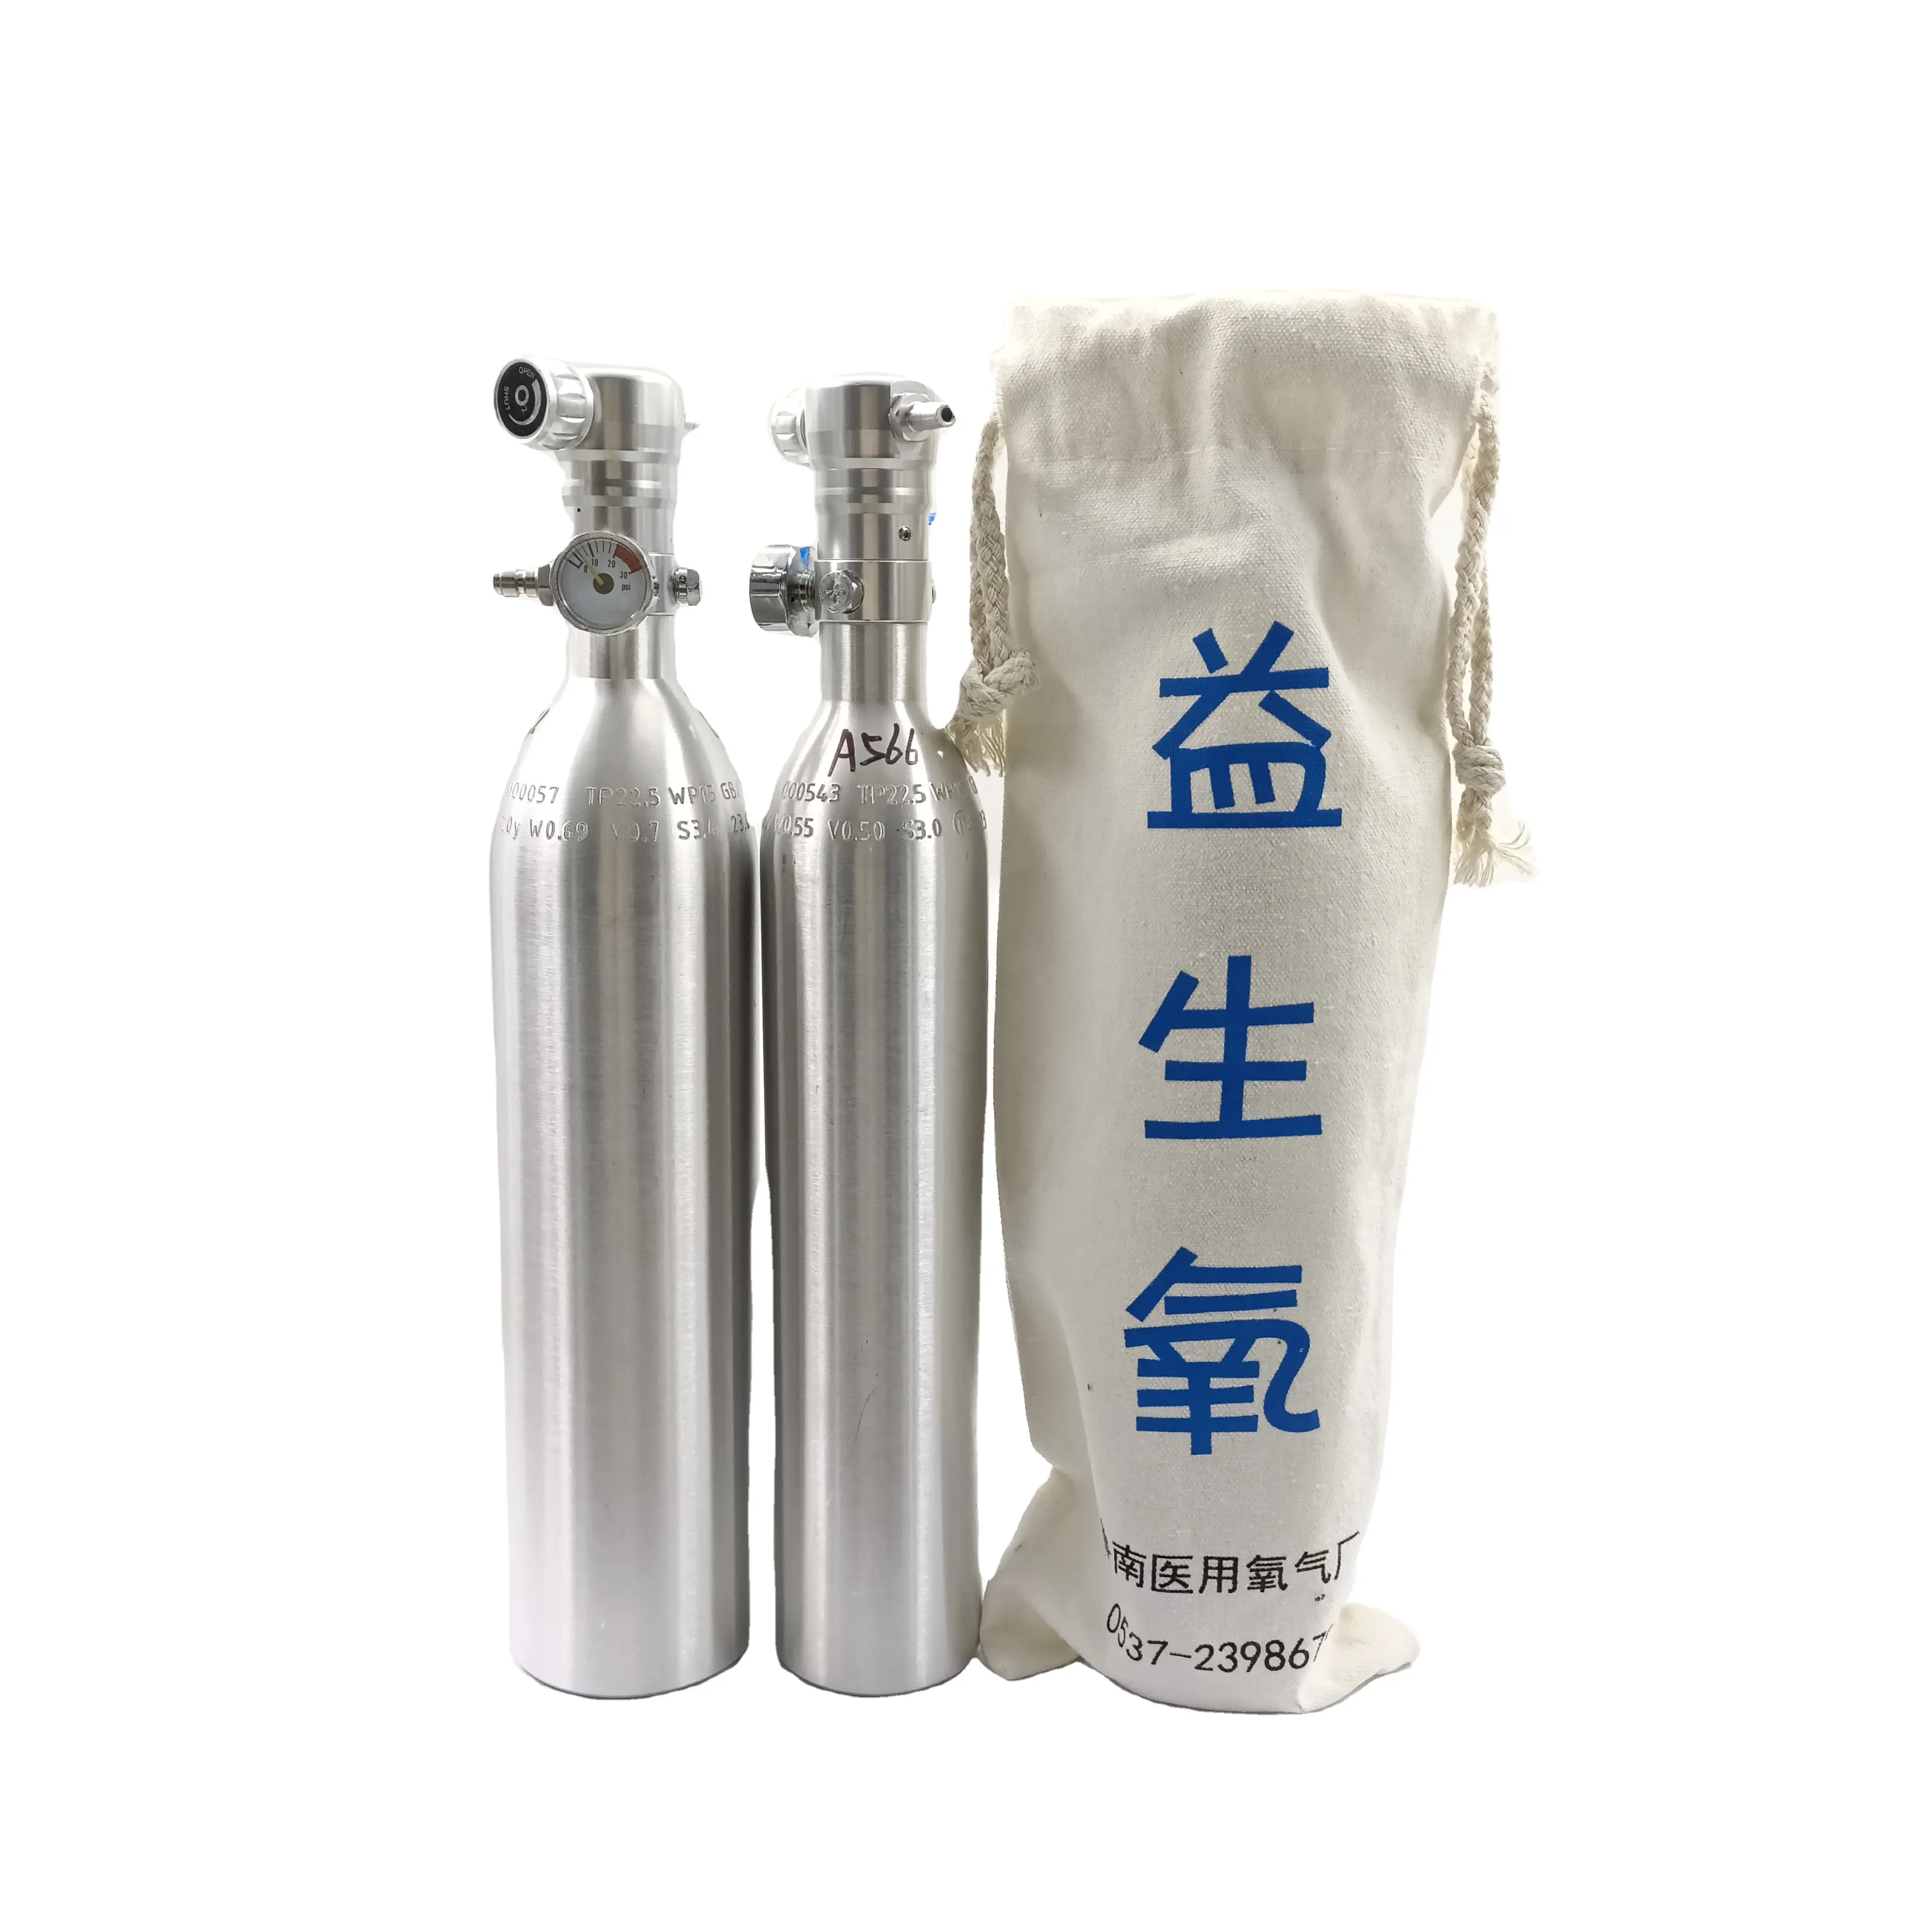 ספק רפואי סיני, צילינדרים חמצן נייד בלחץ גבוה לנשימה ביתית